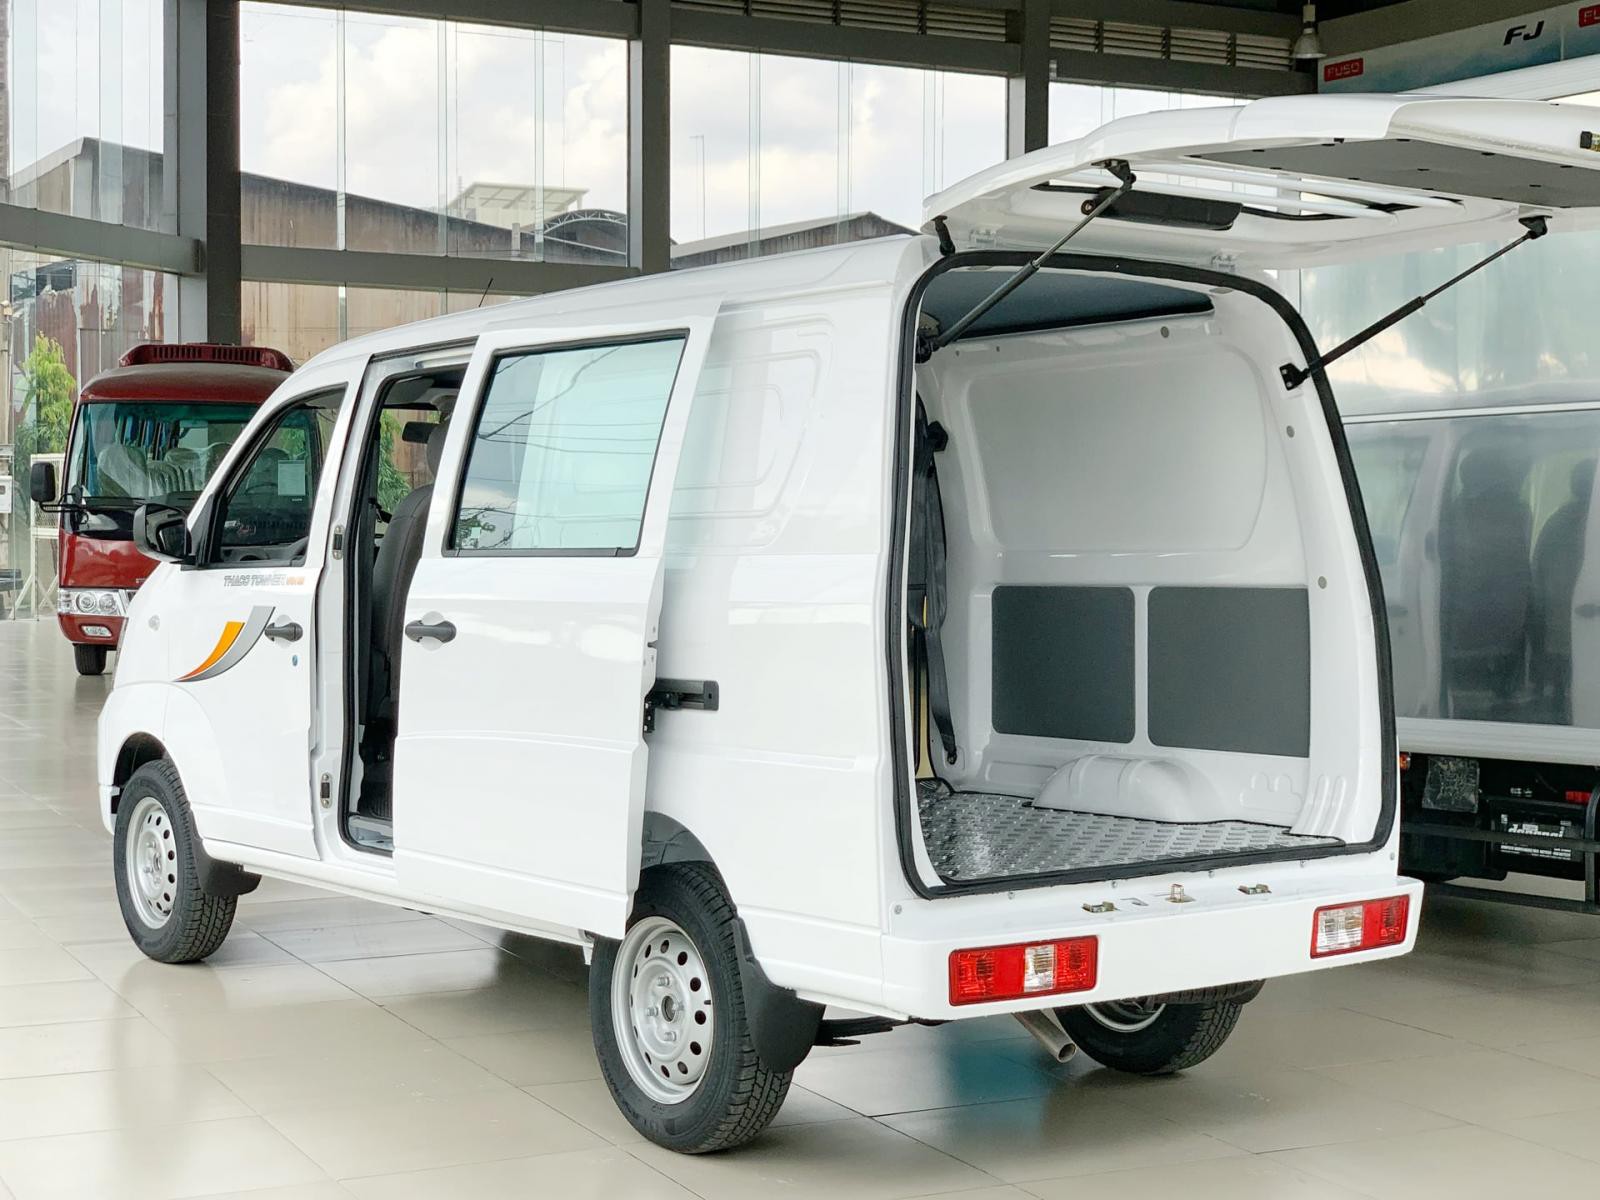 Bán Thaco Towner Van 2S 2022, màu trắng, 100 triệu nhận xe